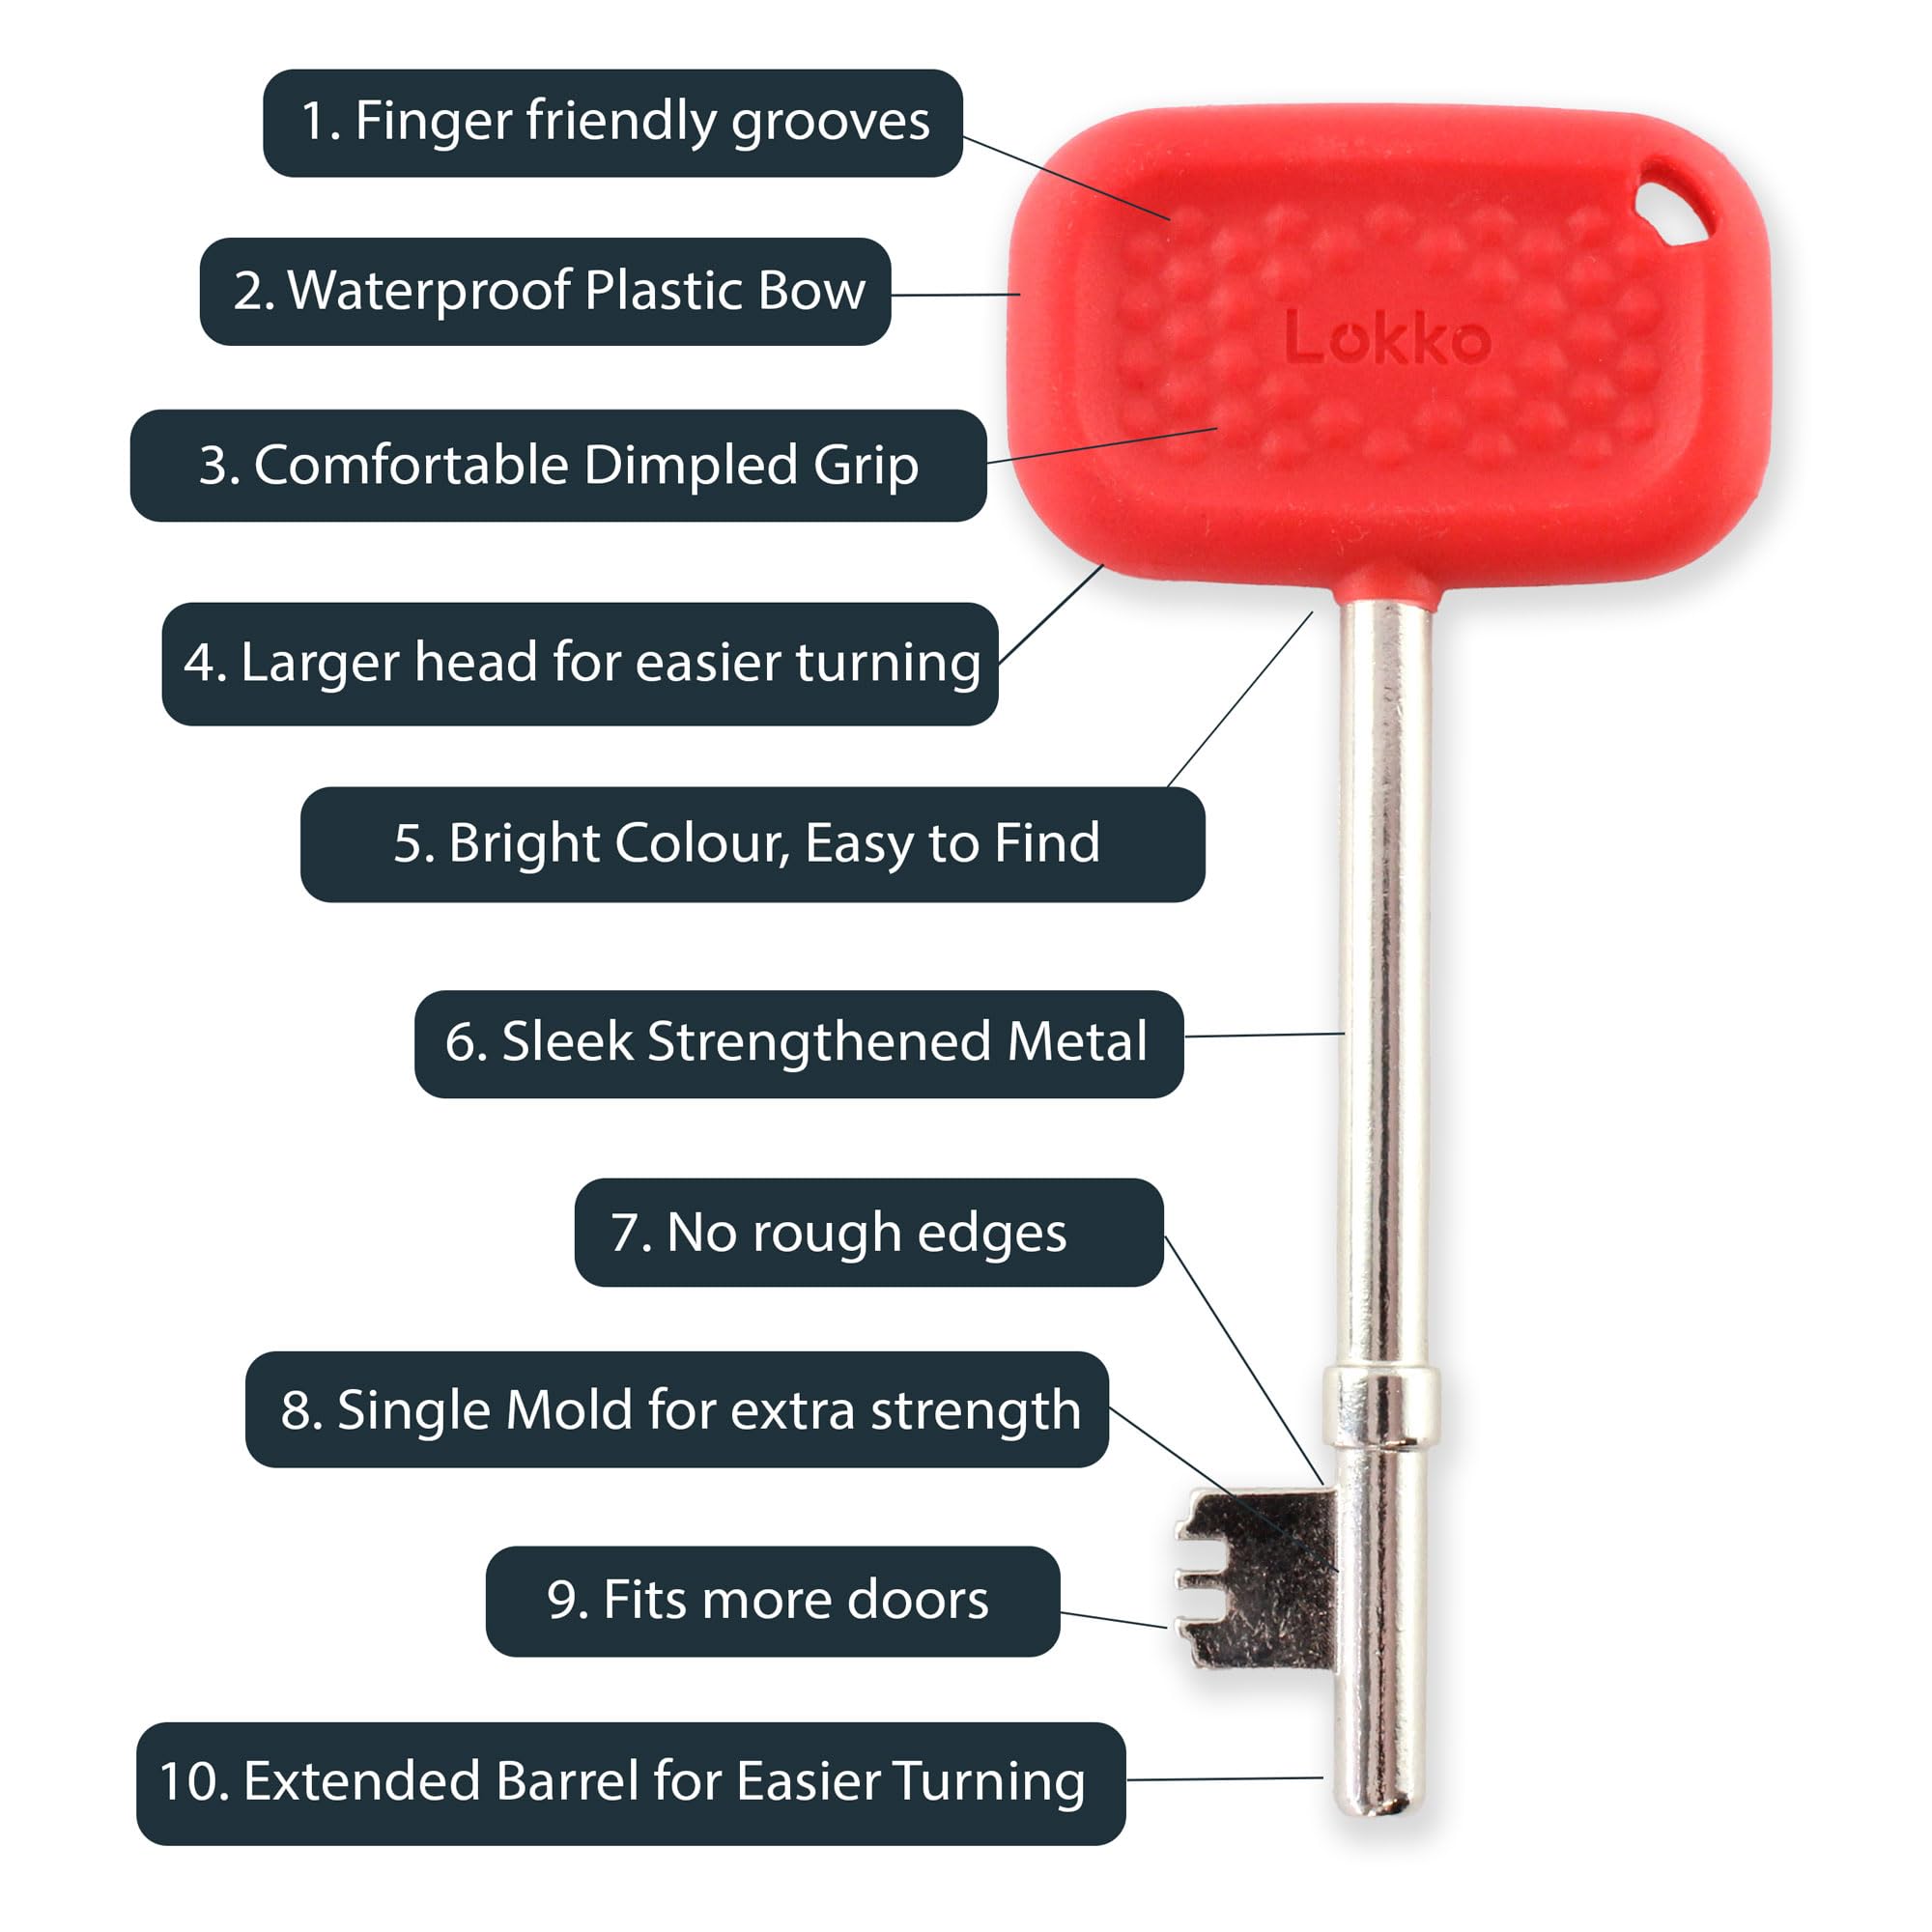 LOKKO Radar Key & Disabled Toilet Key UK - Set of 2 - Waterproof, Dimpled Grip, Easy Turn